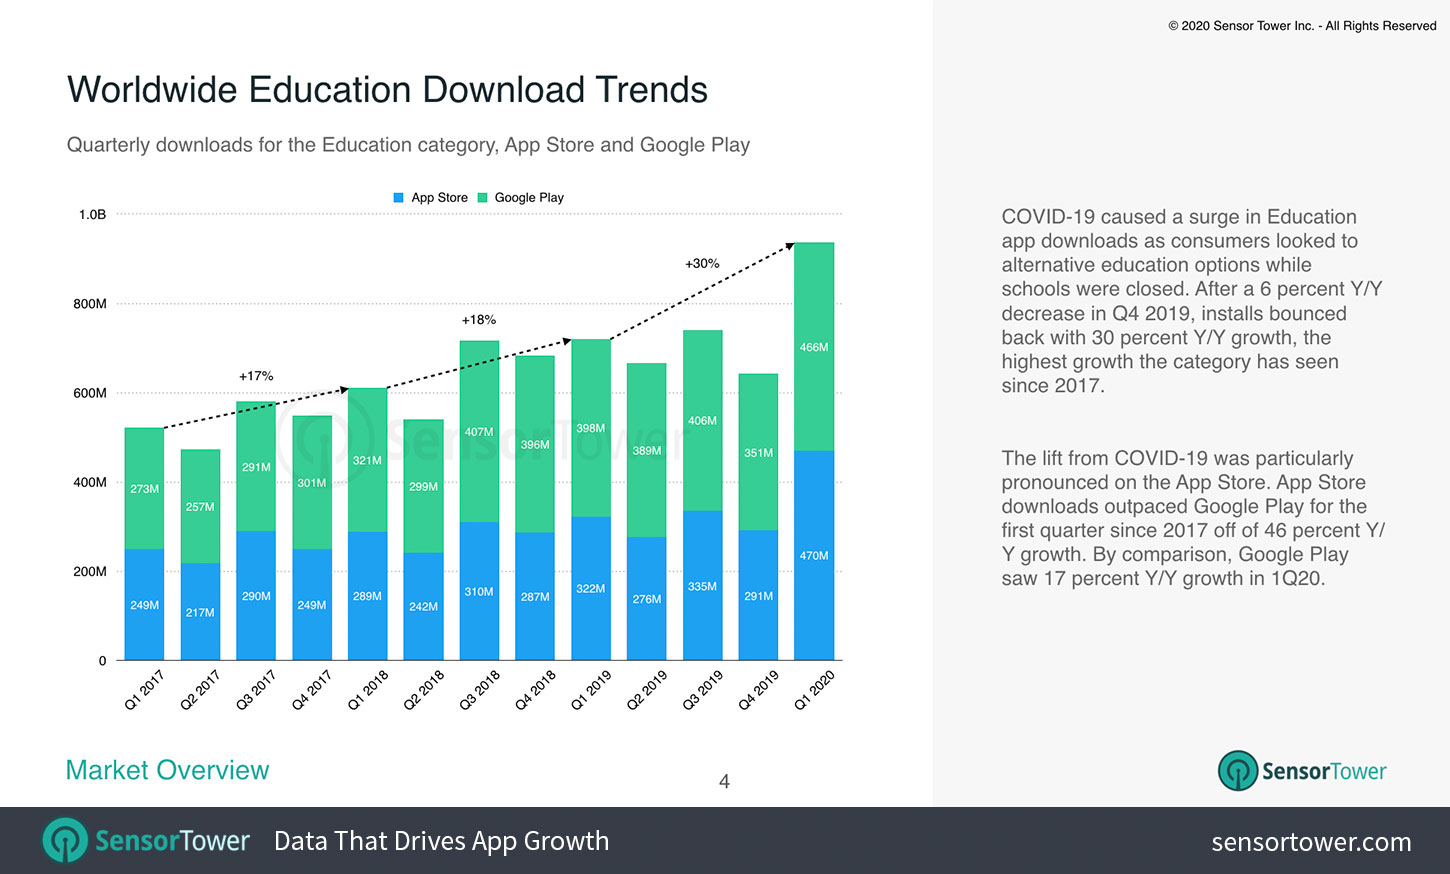 Worldwide Education App Trends 2020